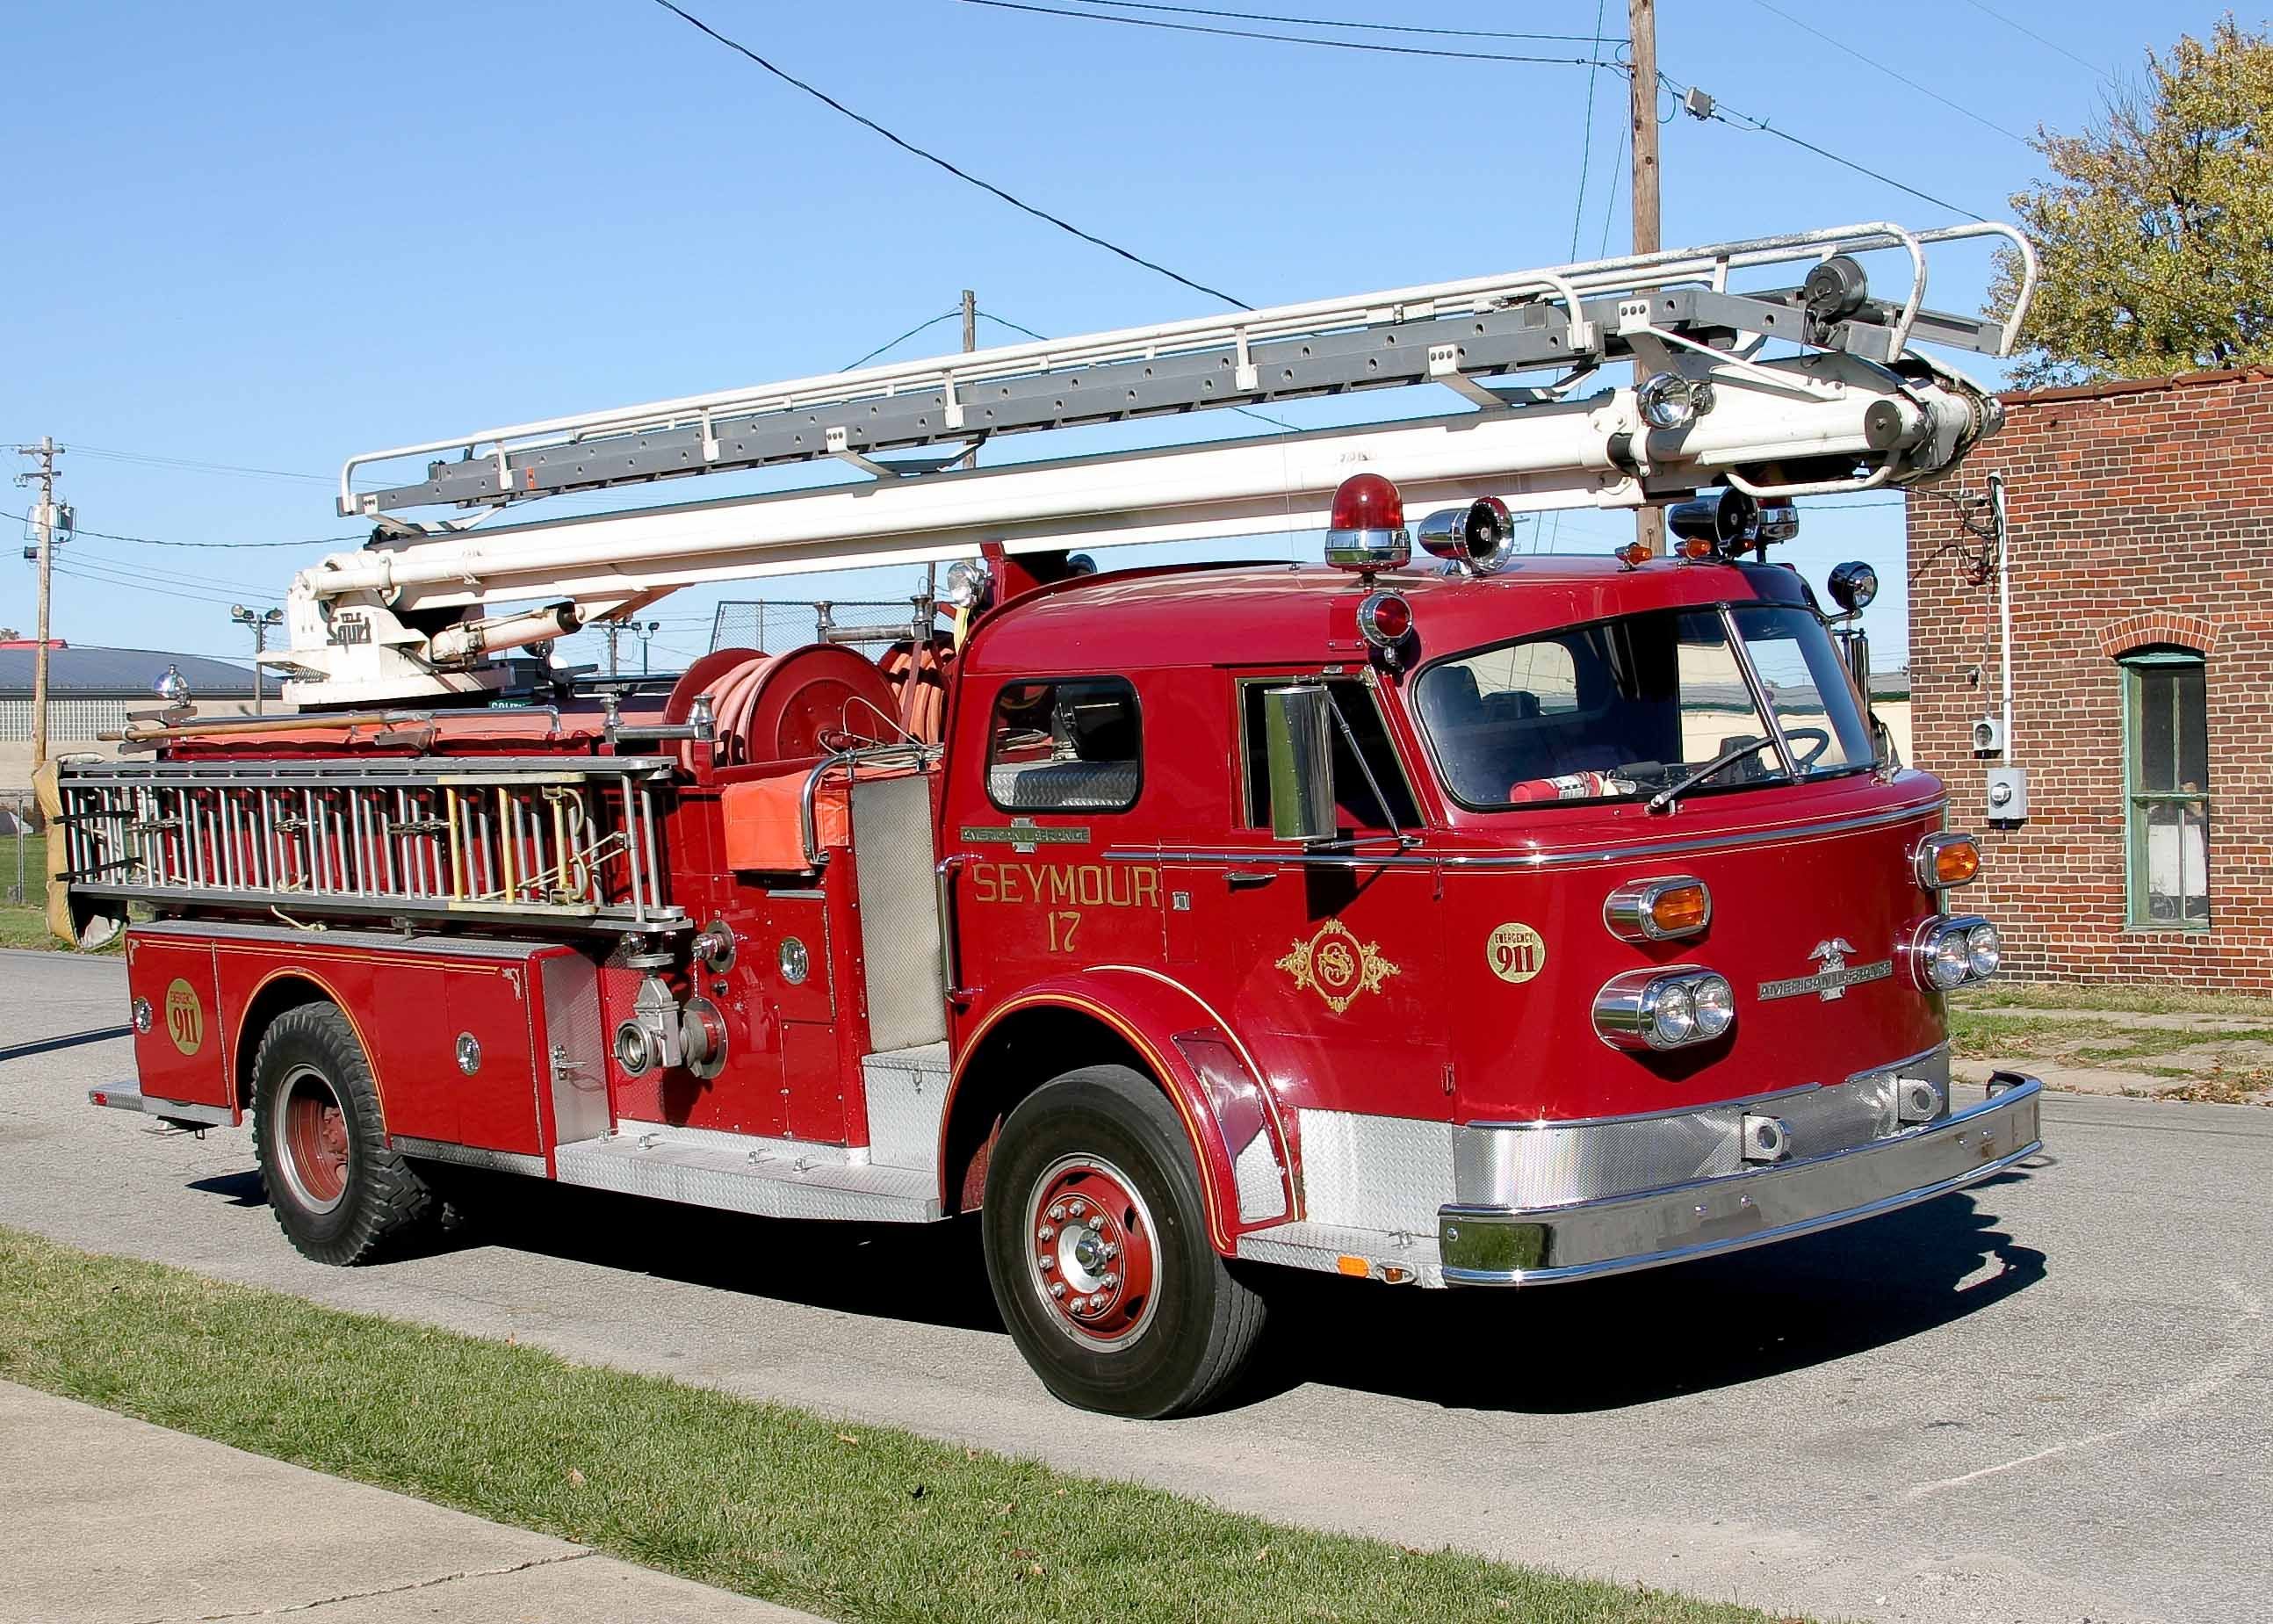 American LAFRANCE Fire Truck